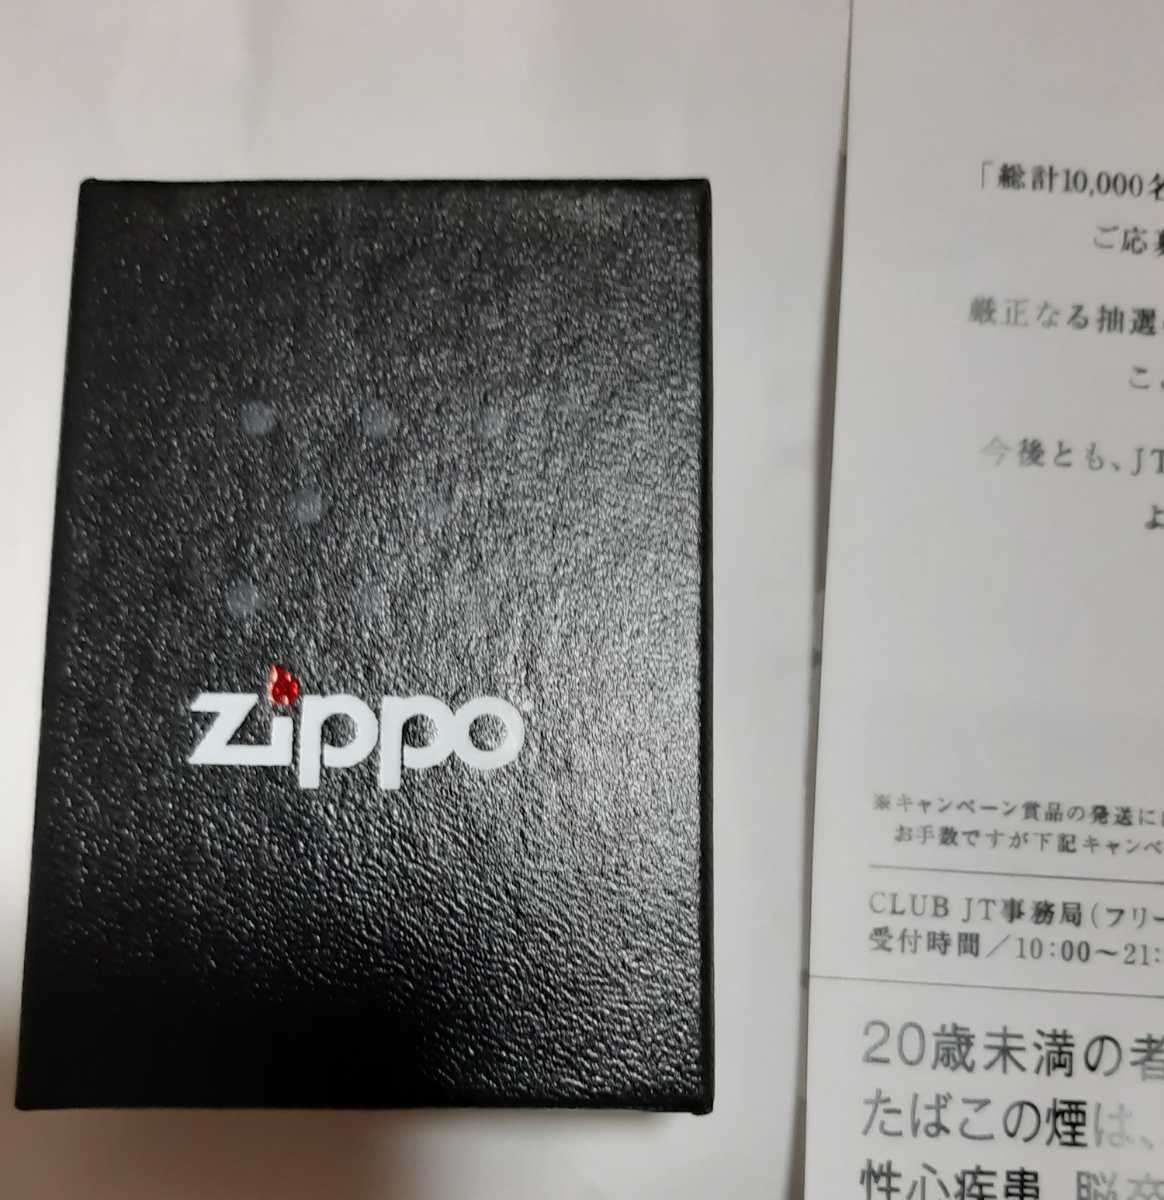 新品 未使用品 送料無料 メビウス ZIPPO たばこ ジッポ MEVIUS made in